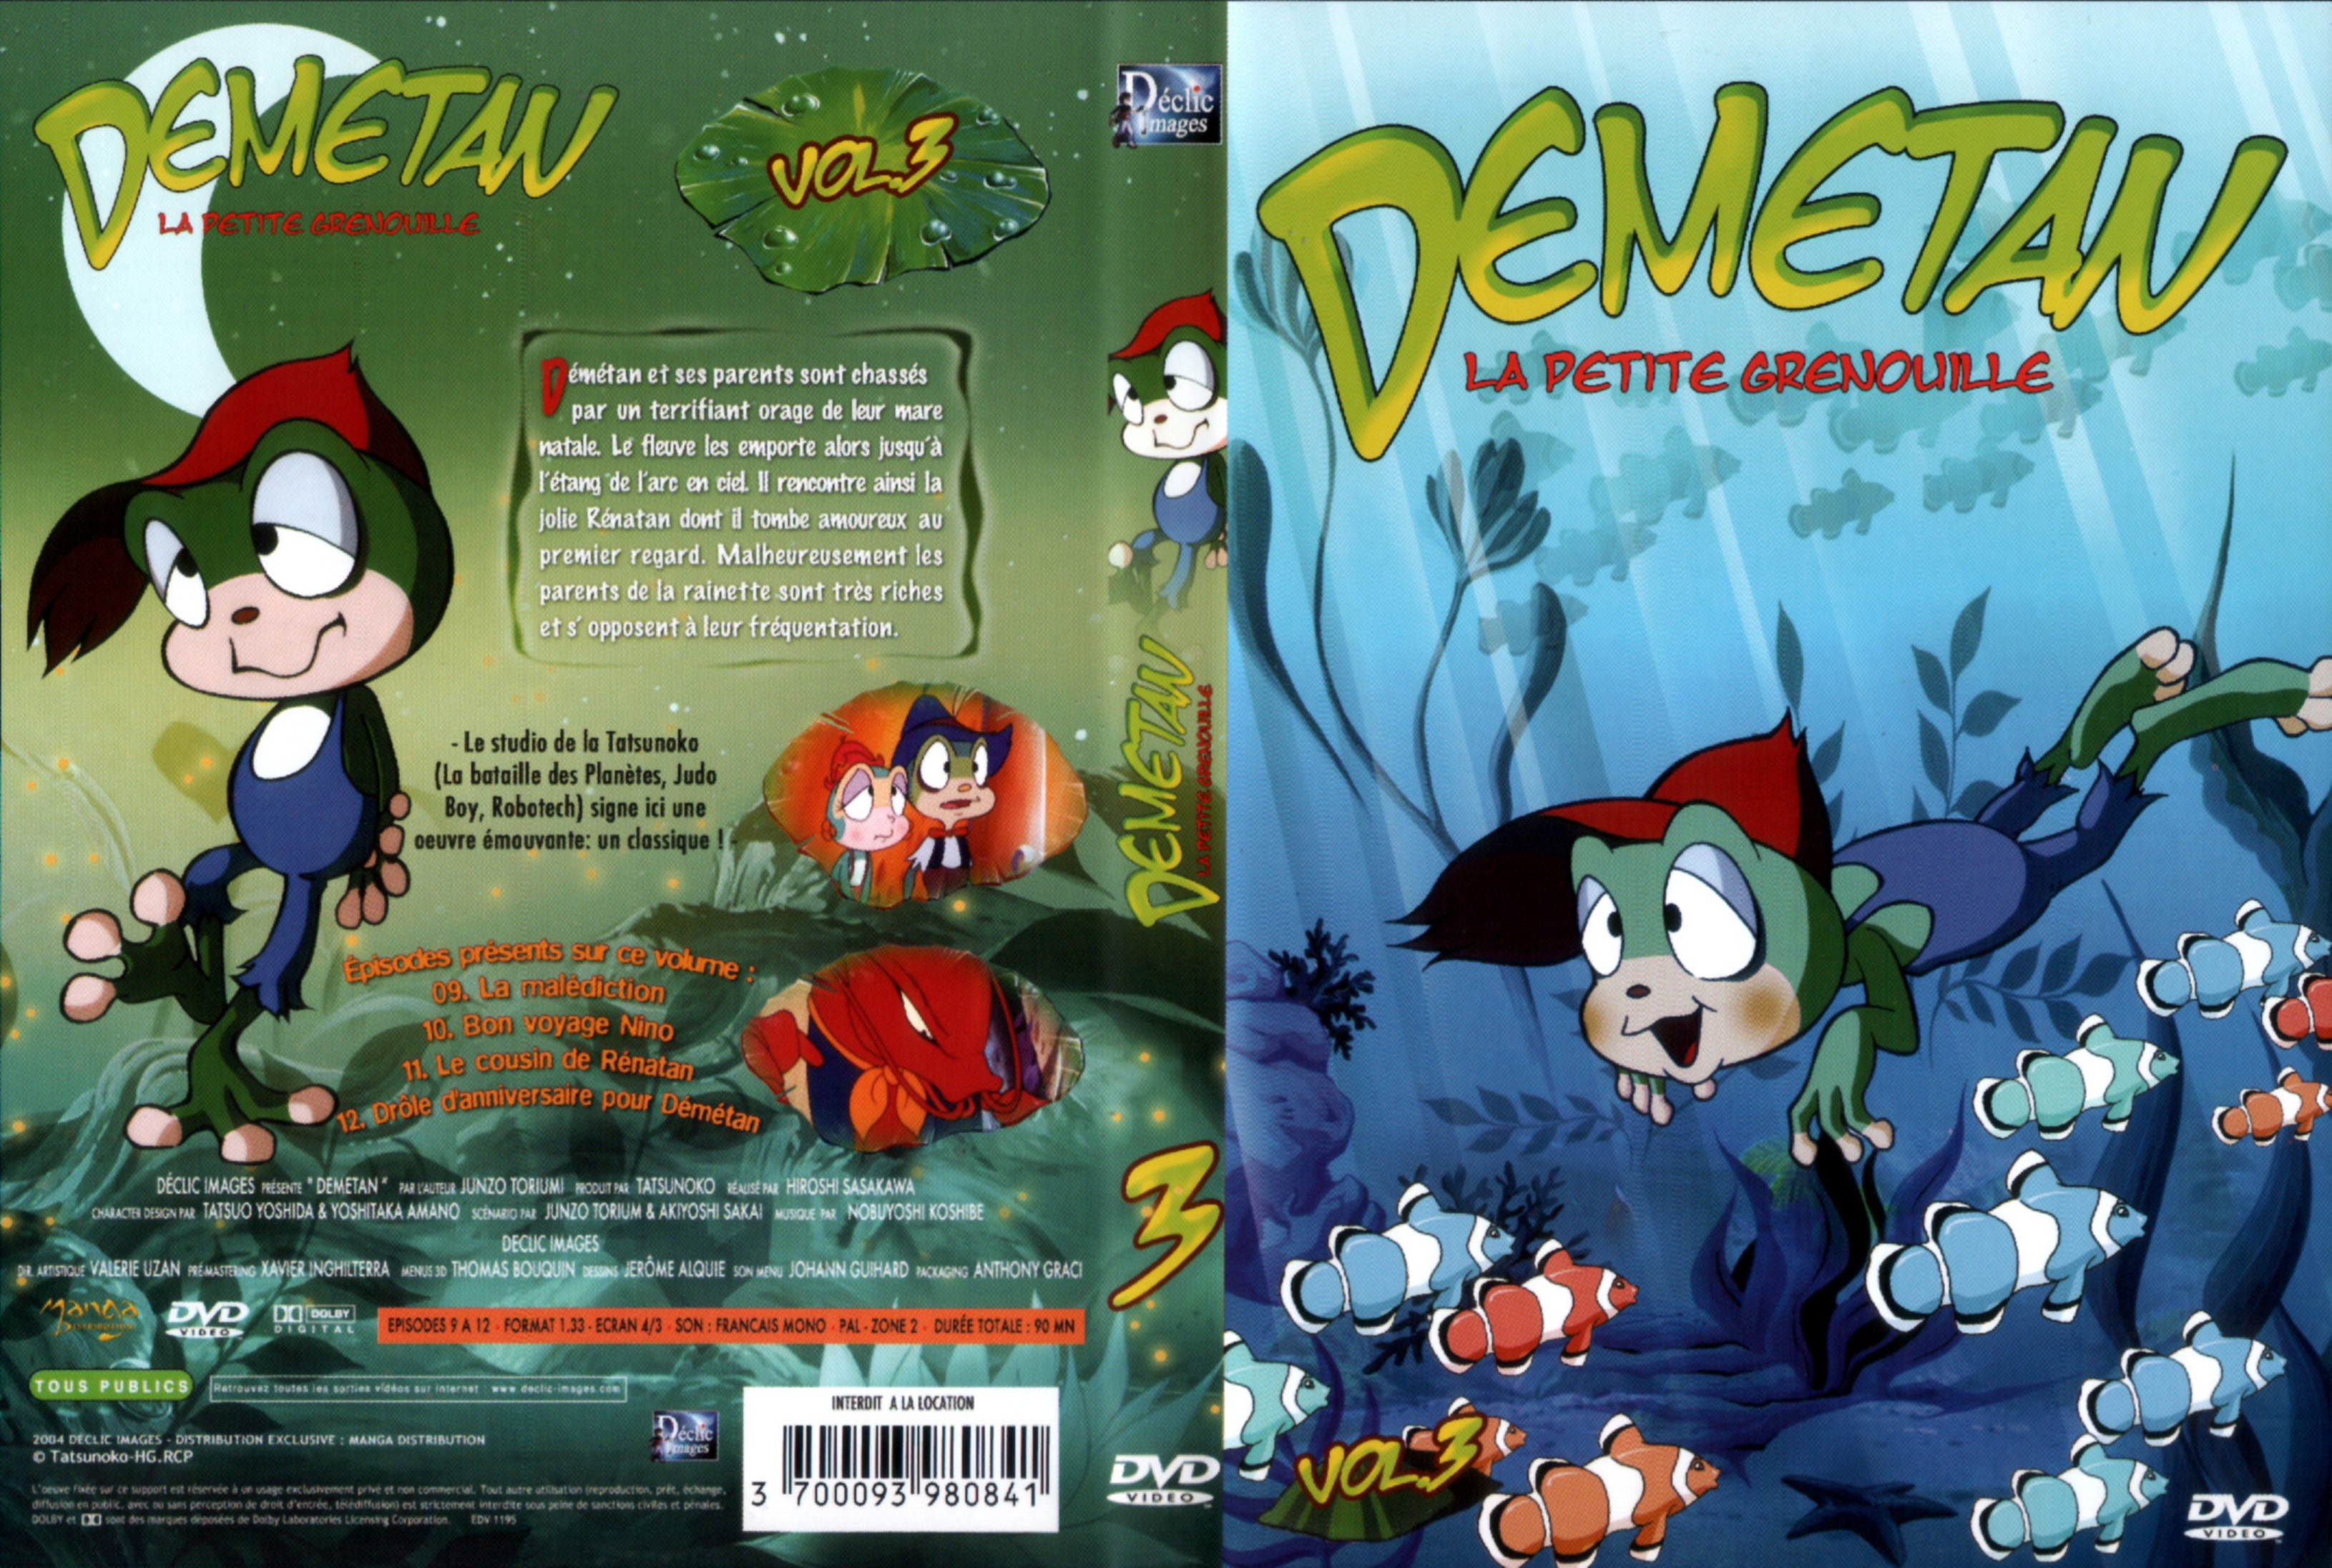 Jaquette DVD Demetan DVD 03